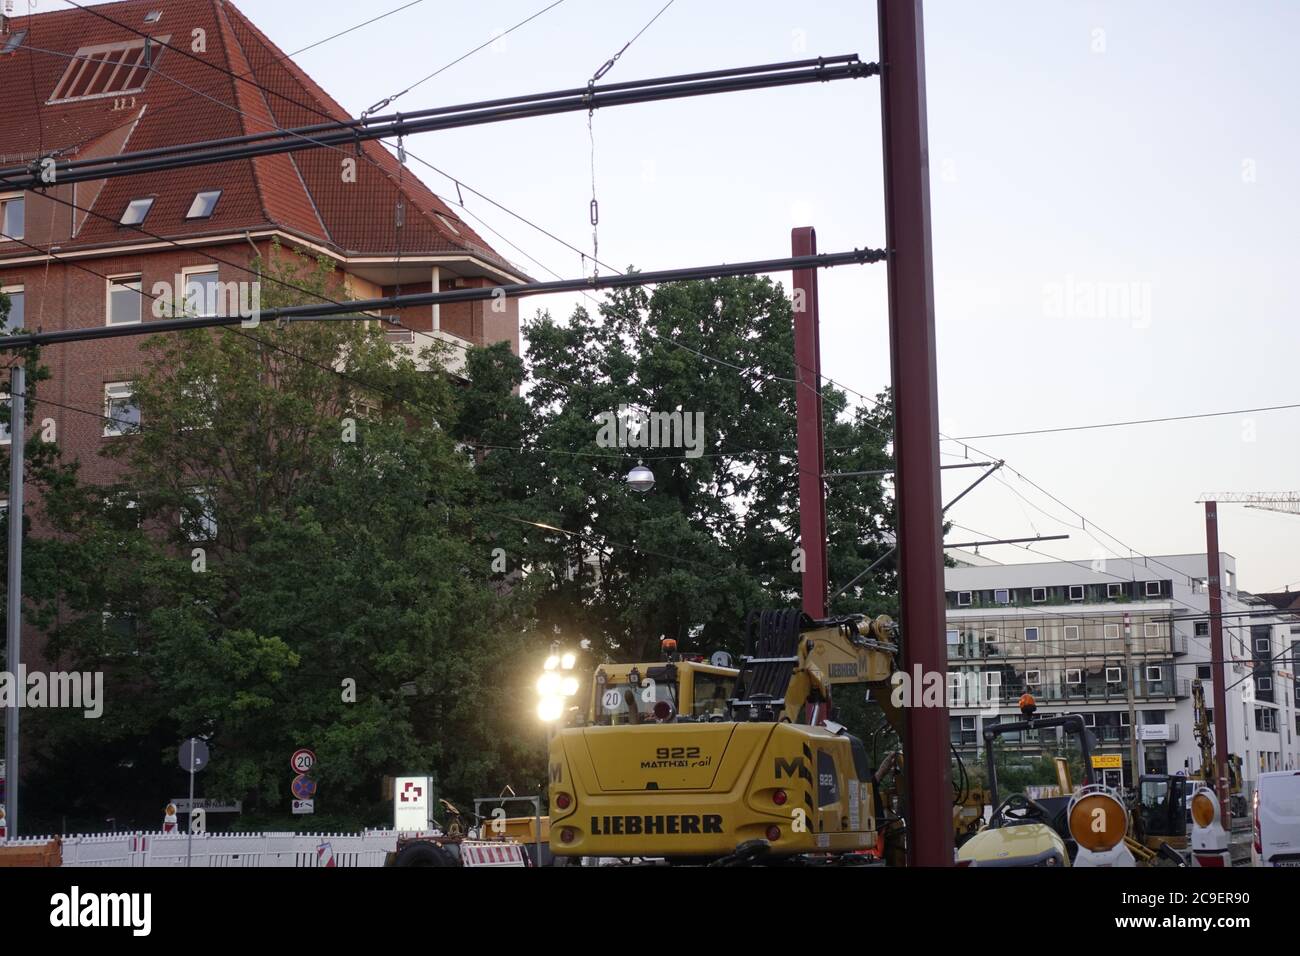 Baustelle in Deutschland Stock Photo